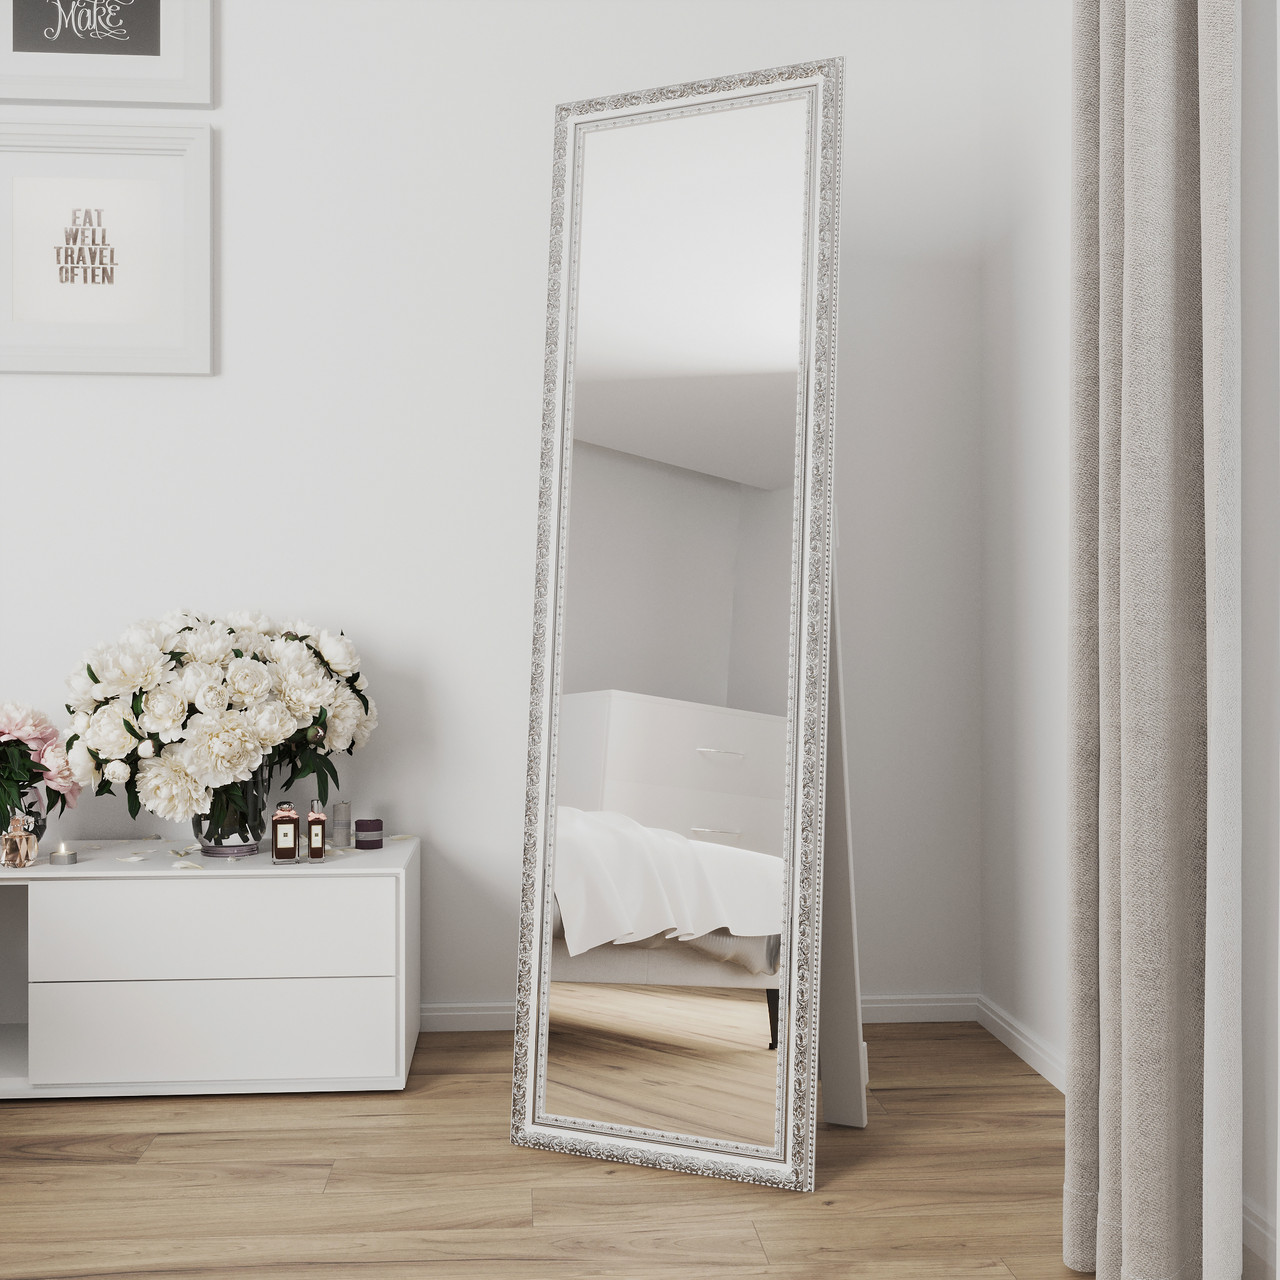 Підлогове дзеркало в повний зріст біле з патиною срібла 170х50 Black Mirror в рамі в спальню коридор передпокій